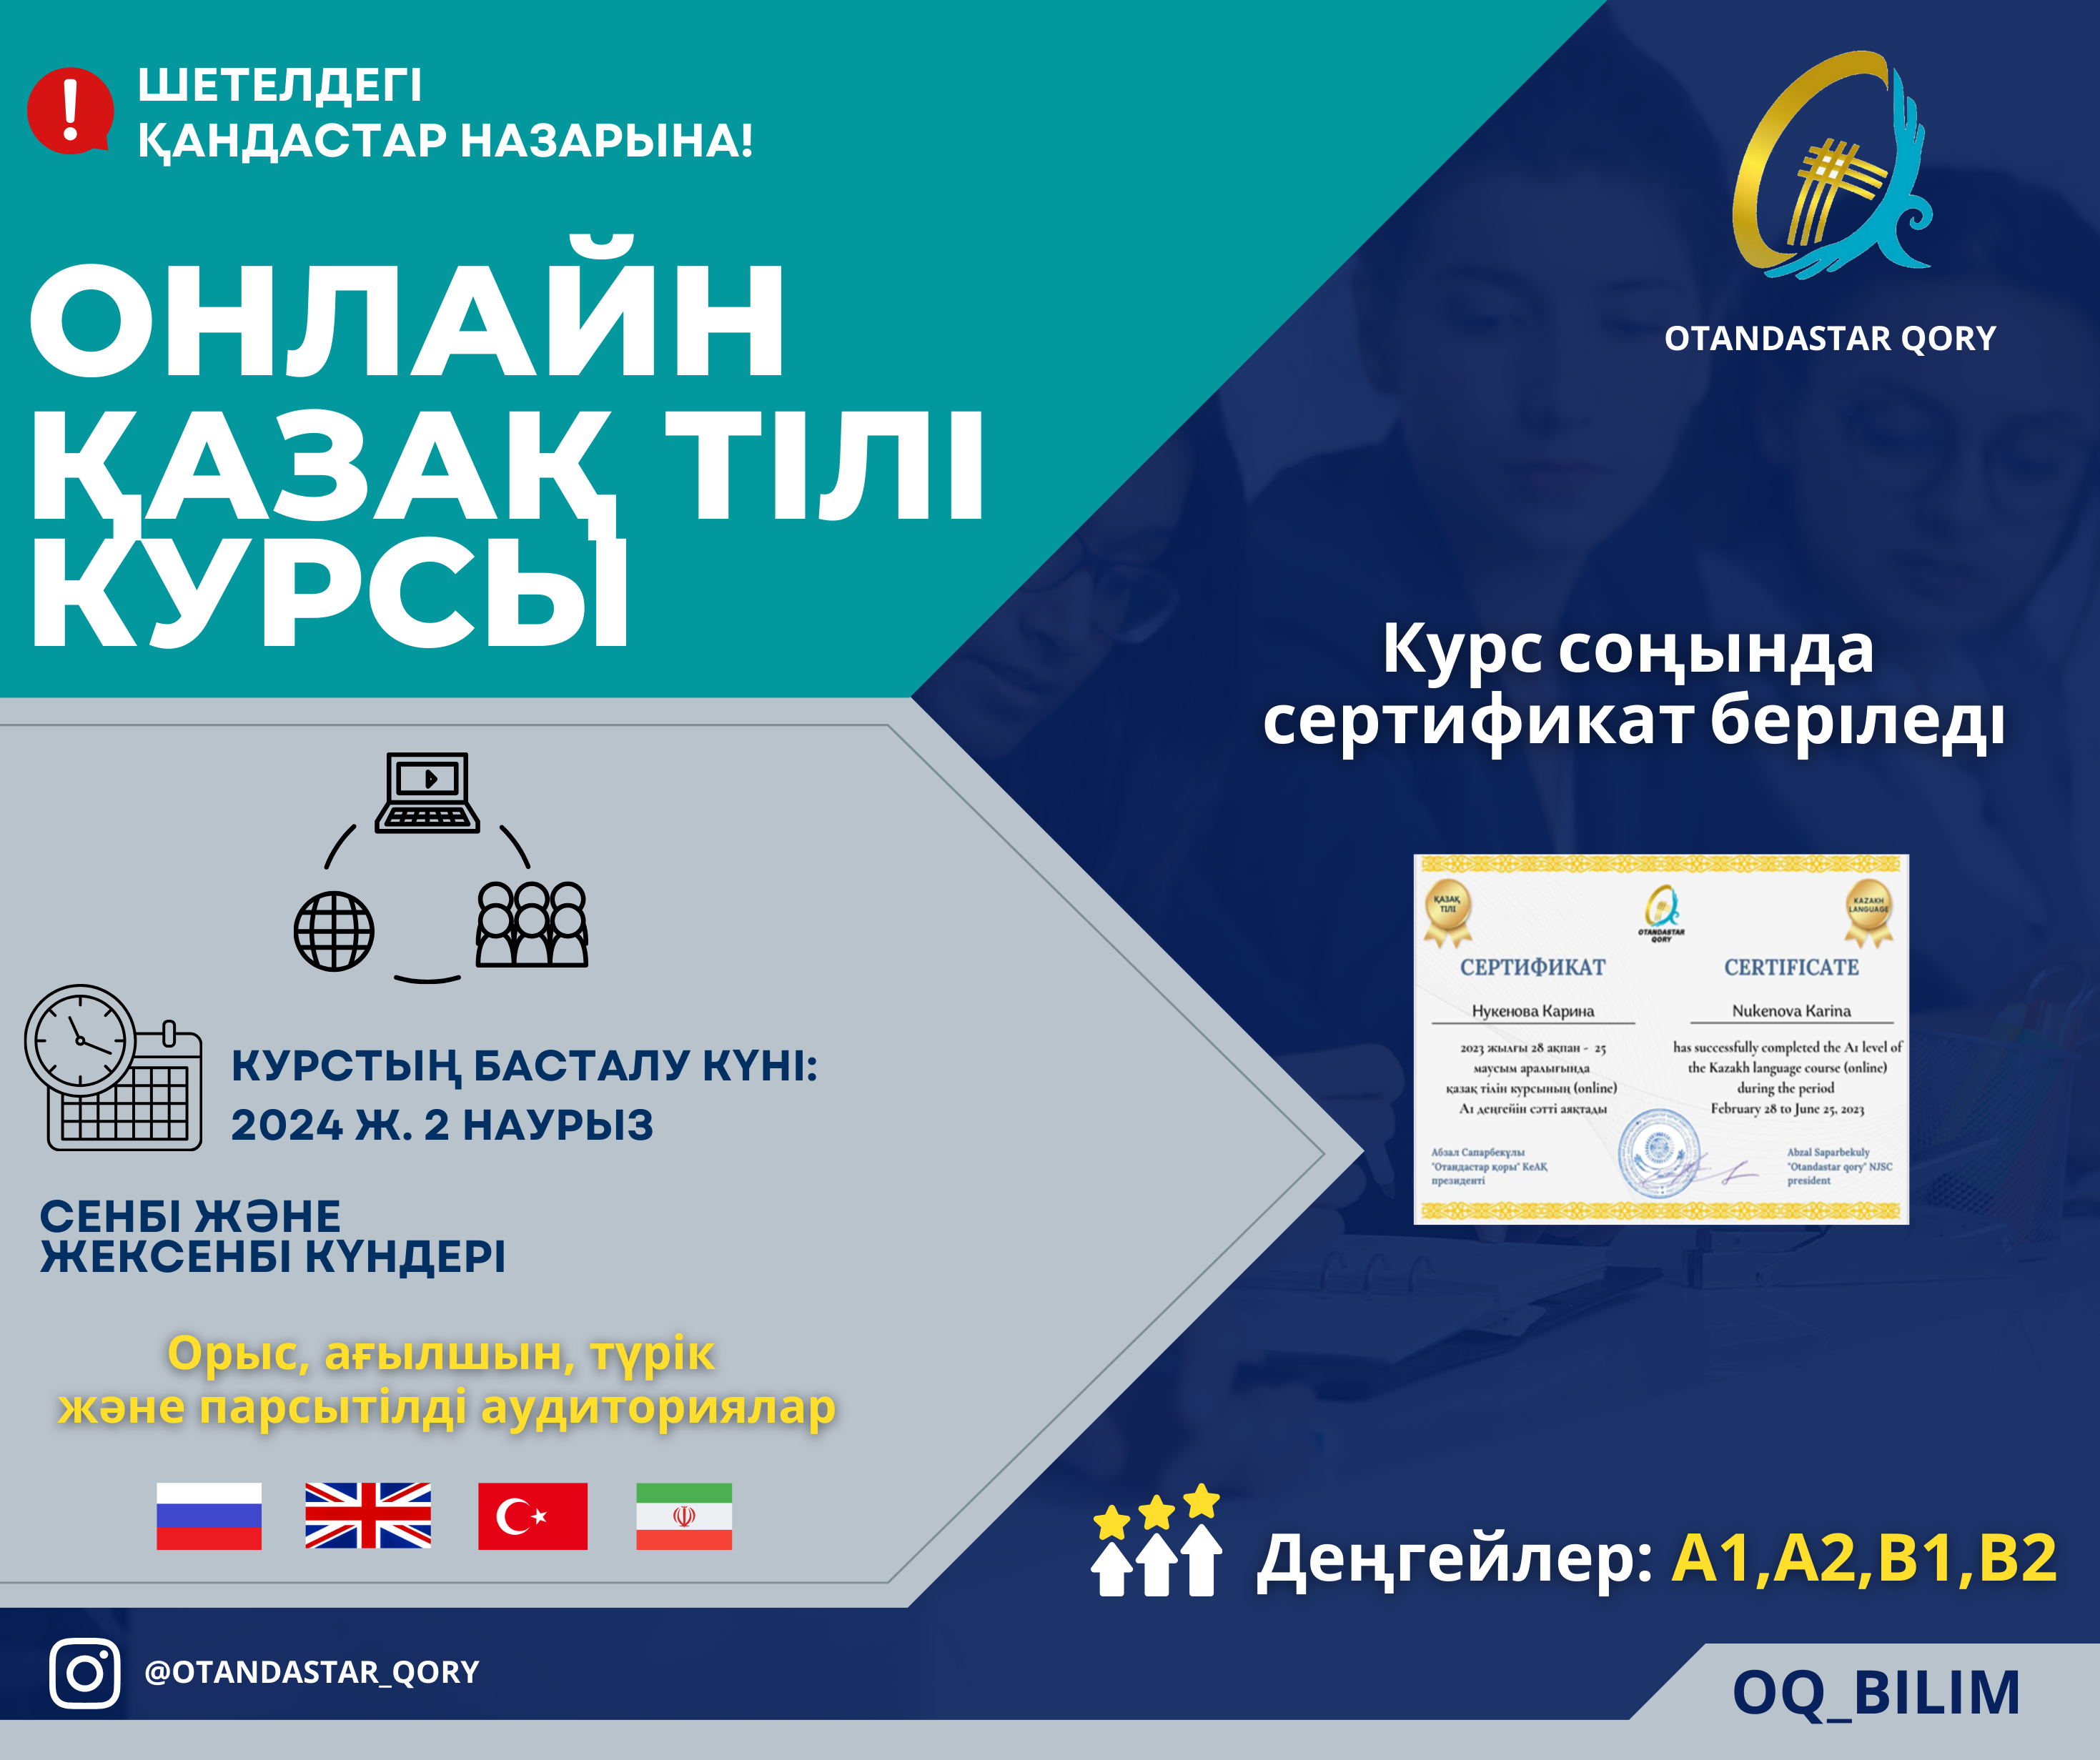 Online Kazakh language course